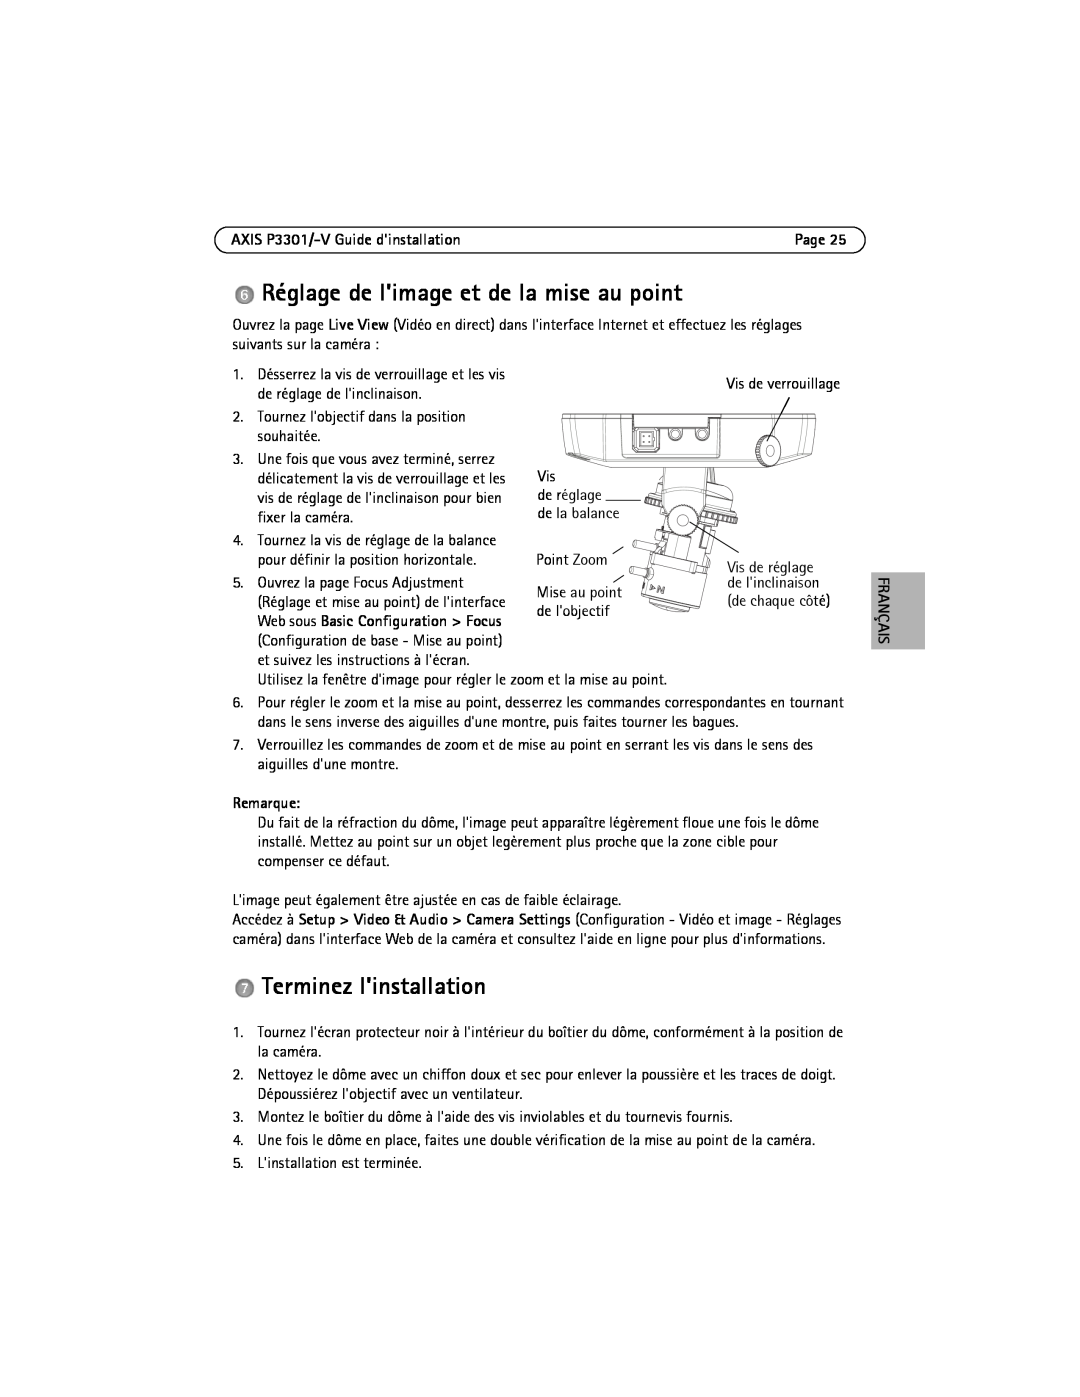 Axis Communications AXIS P3301 manual Réglage de limage et de la mise au point, Terminez linstallation, Remarque, Français 